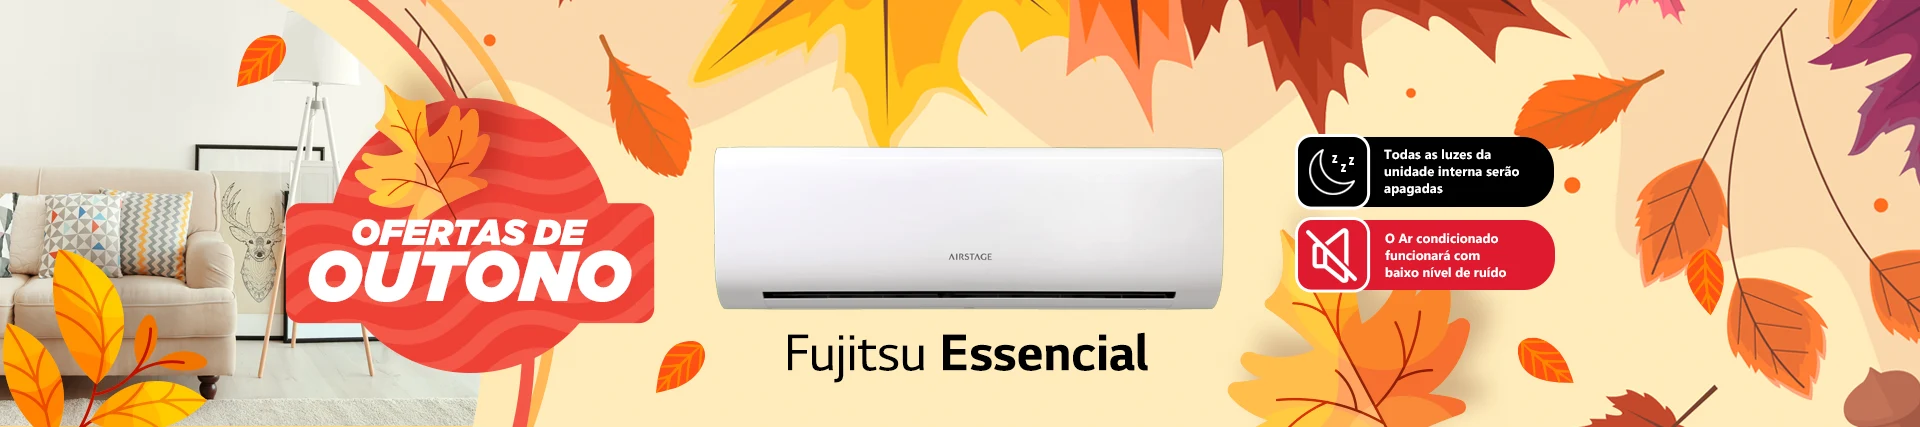 Banner Desktop Fujitsu Airstage Essencial Outono